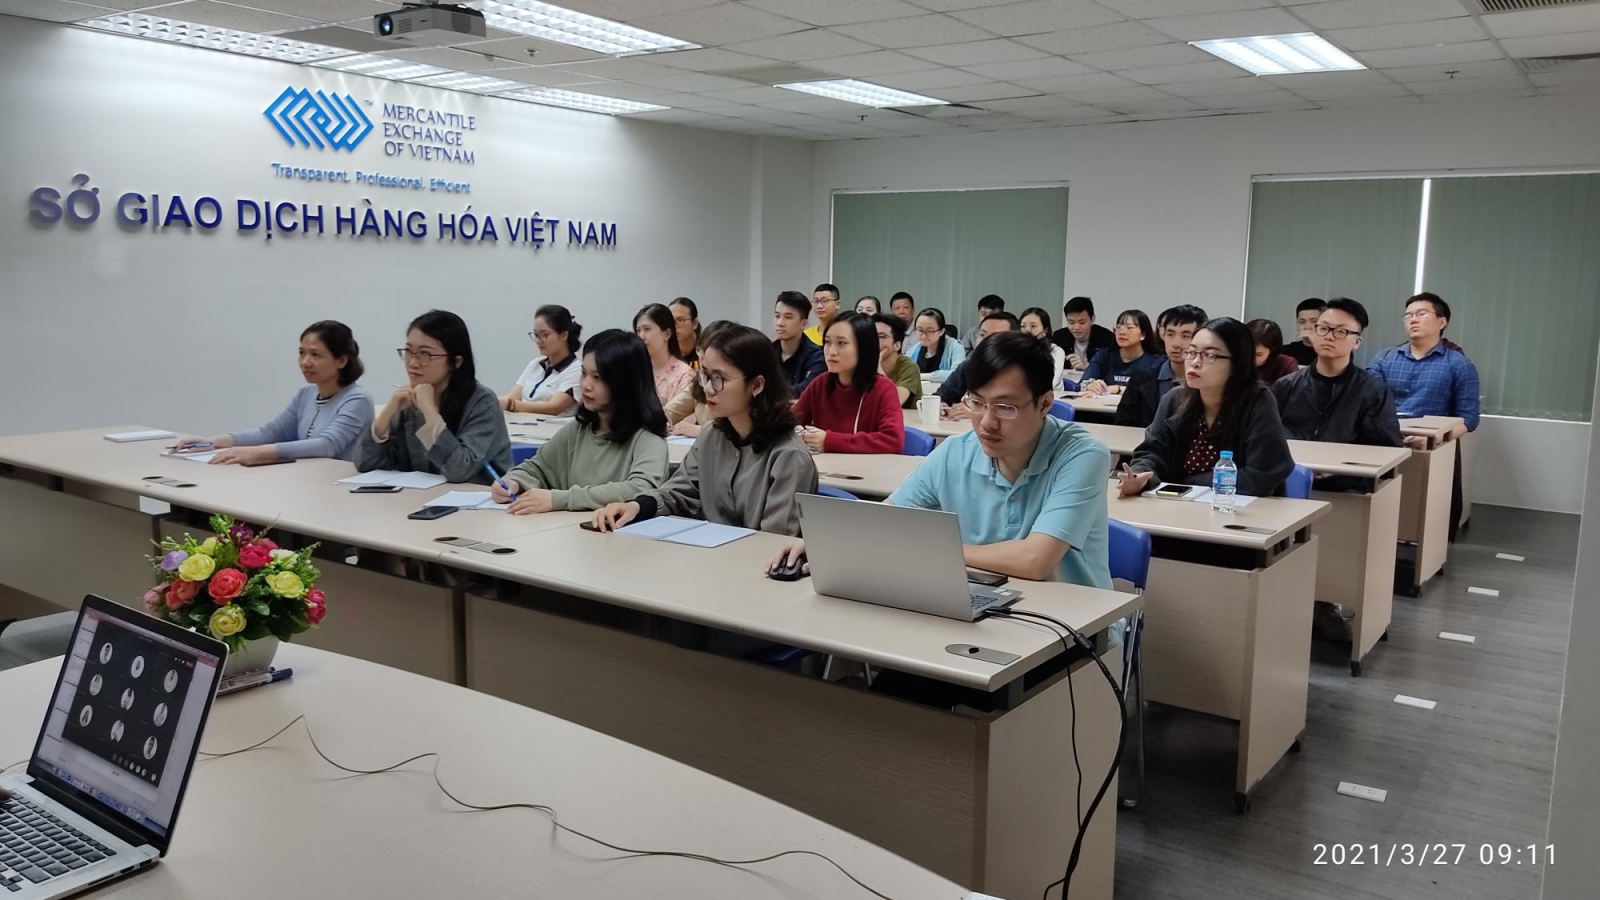 Sở Giao dịch Hàng hoá Việt Nam (MXV) tổ chức khoá đào tạo nội bộ tin học văn phòng